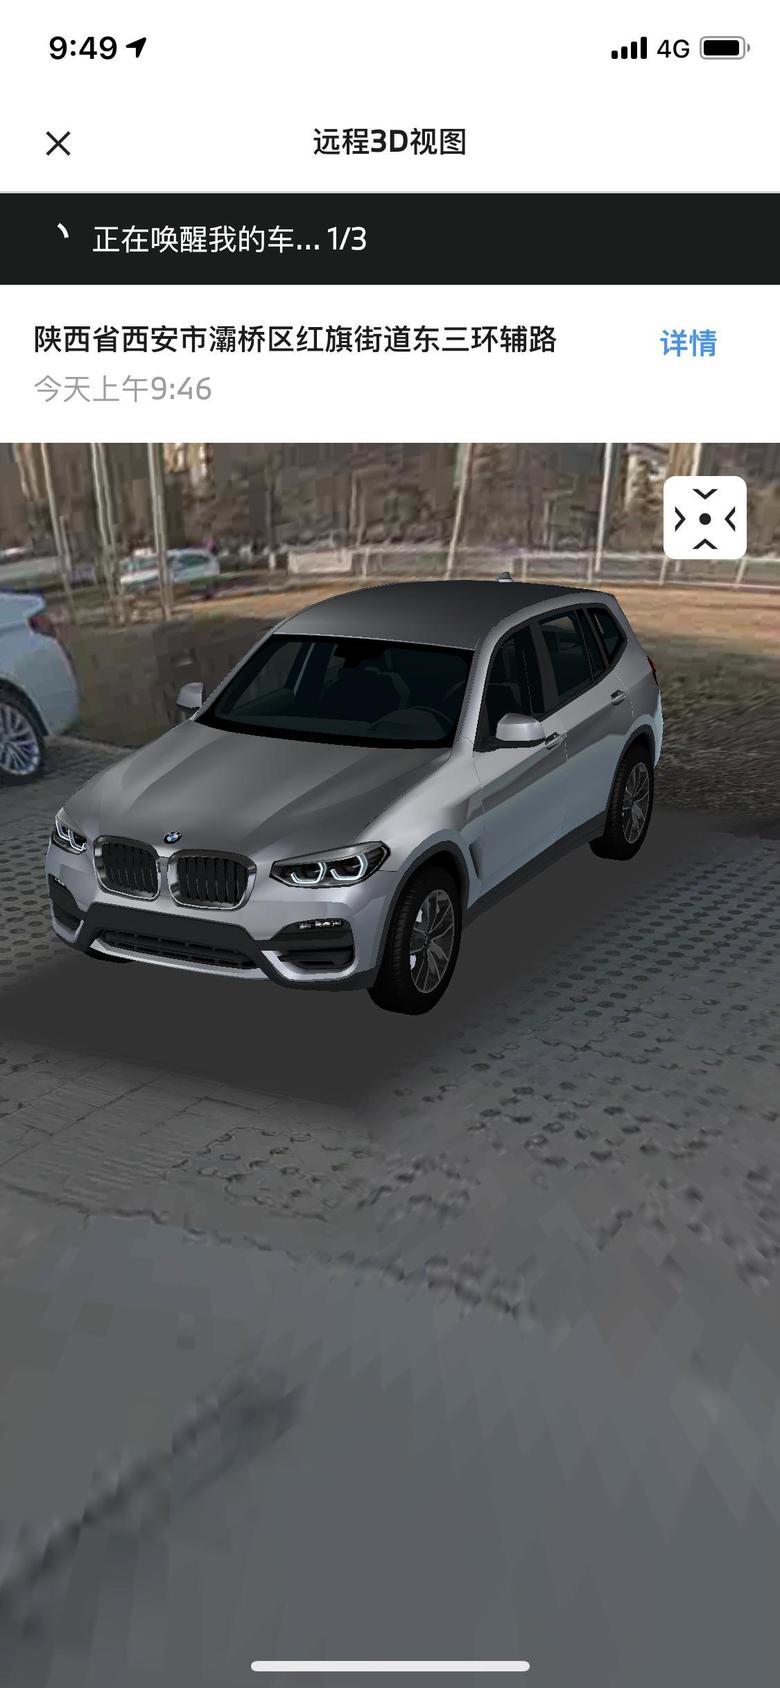 宝马x3 很牛?的功能。随时随地手机查看车辆实时位置。3D实时场景在线观看。么么哒。